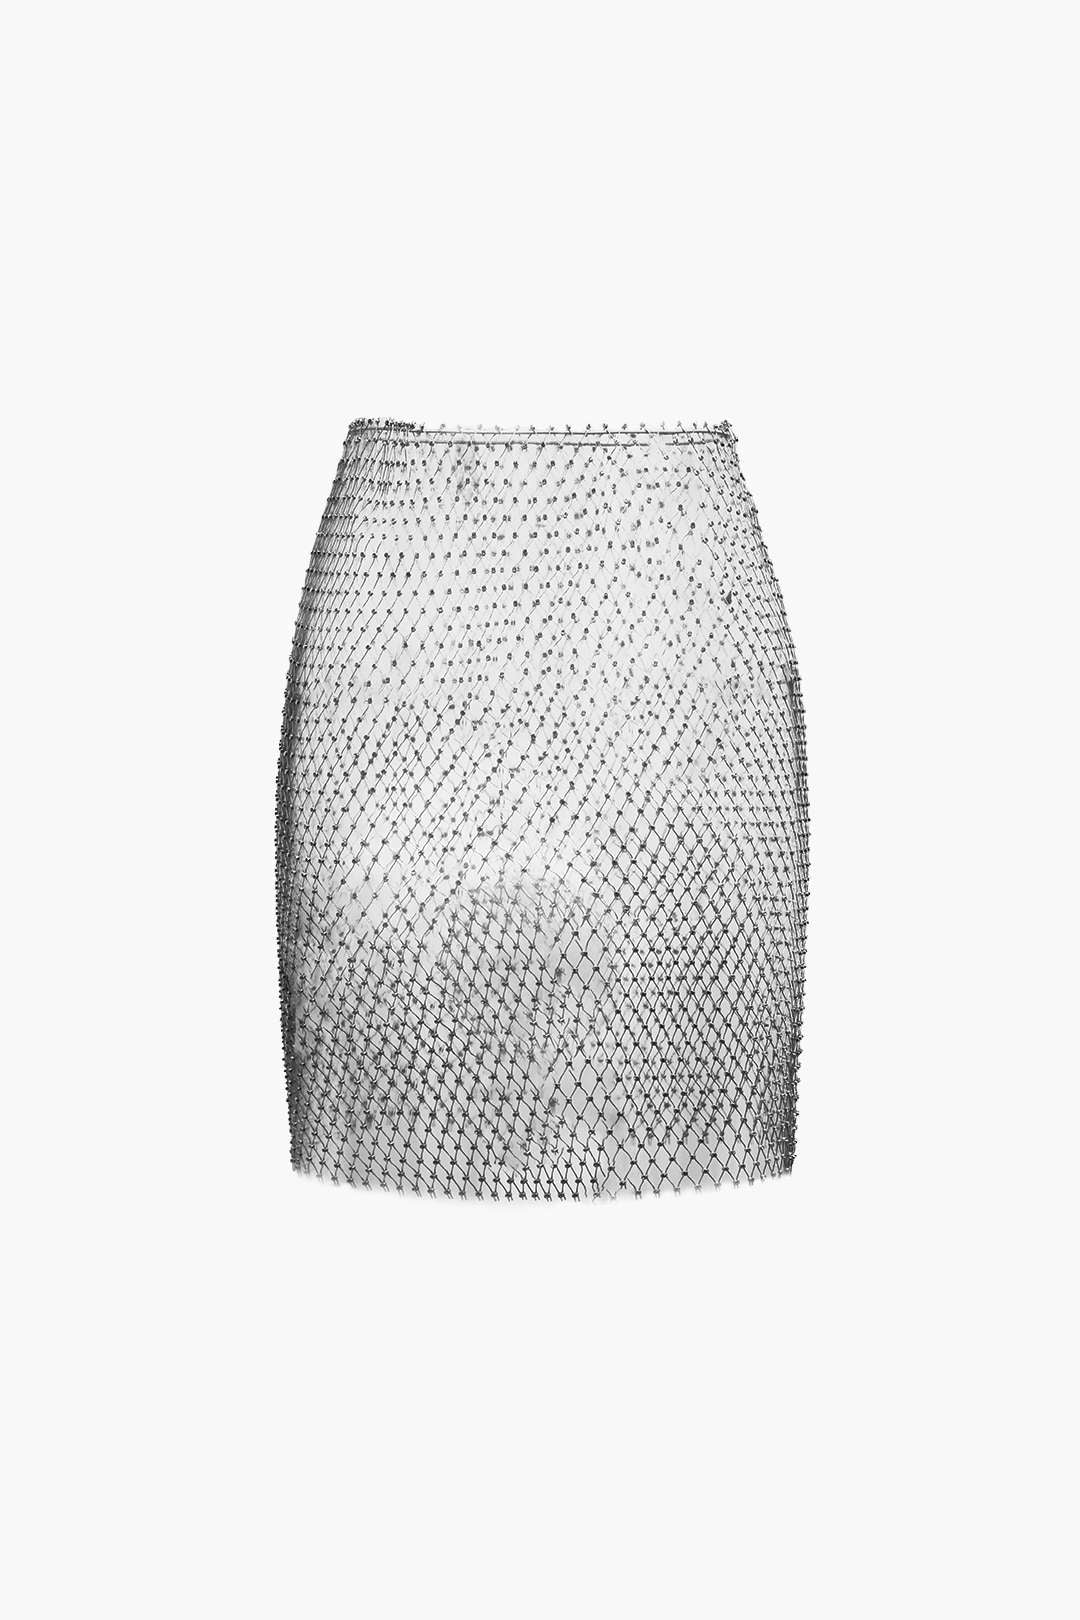 Rhinestone Sheer Net Skirt